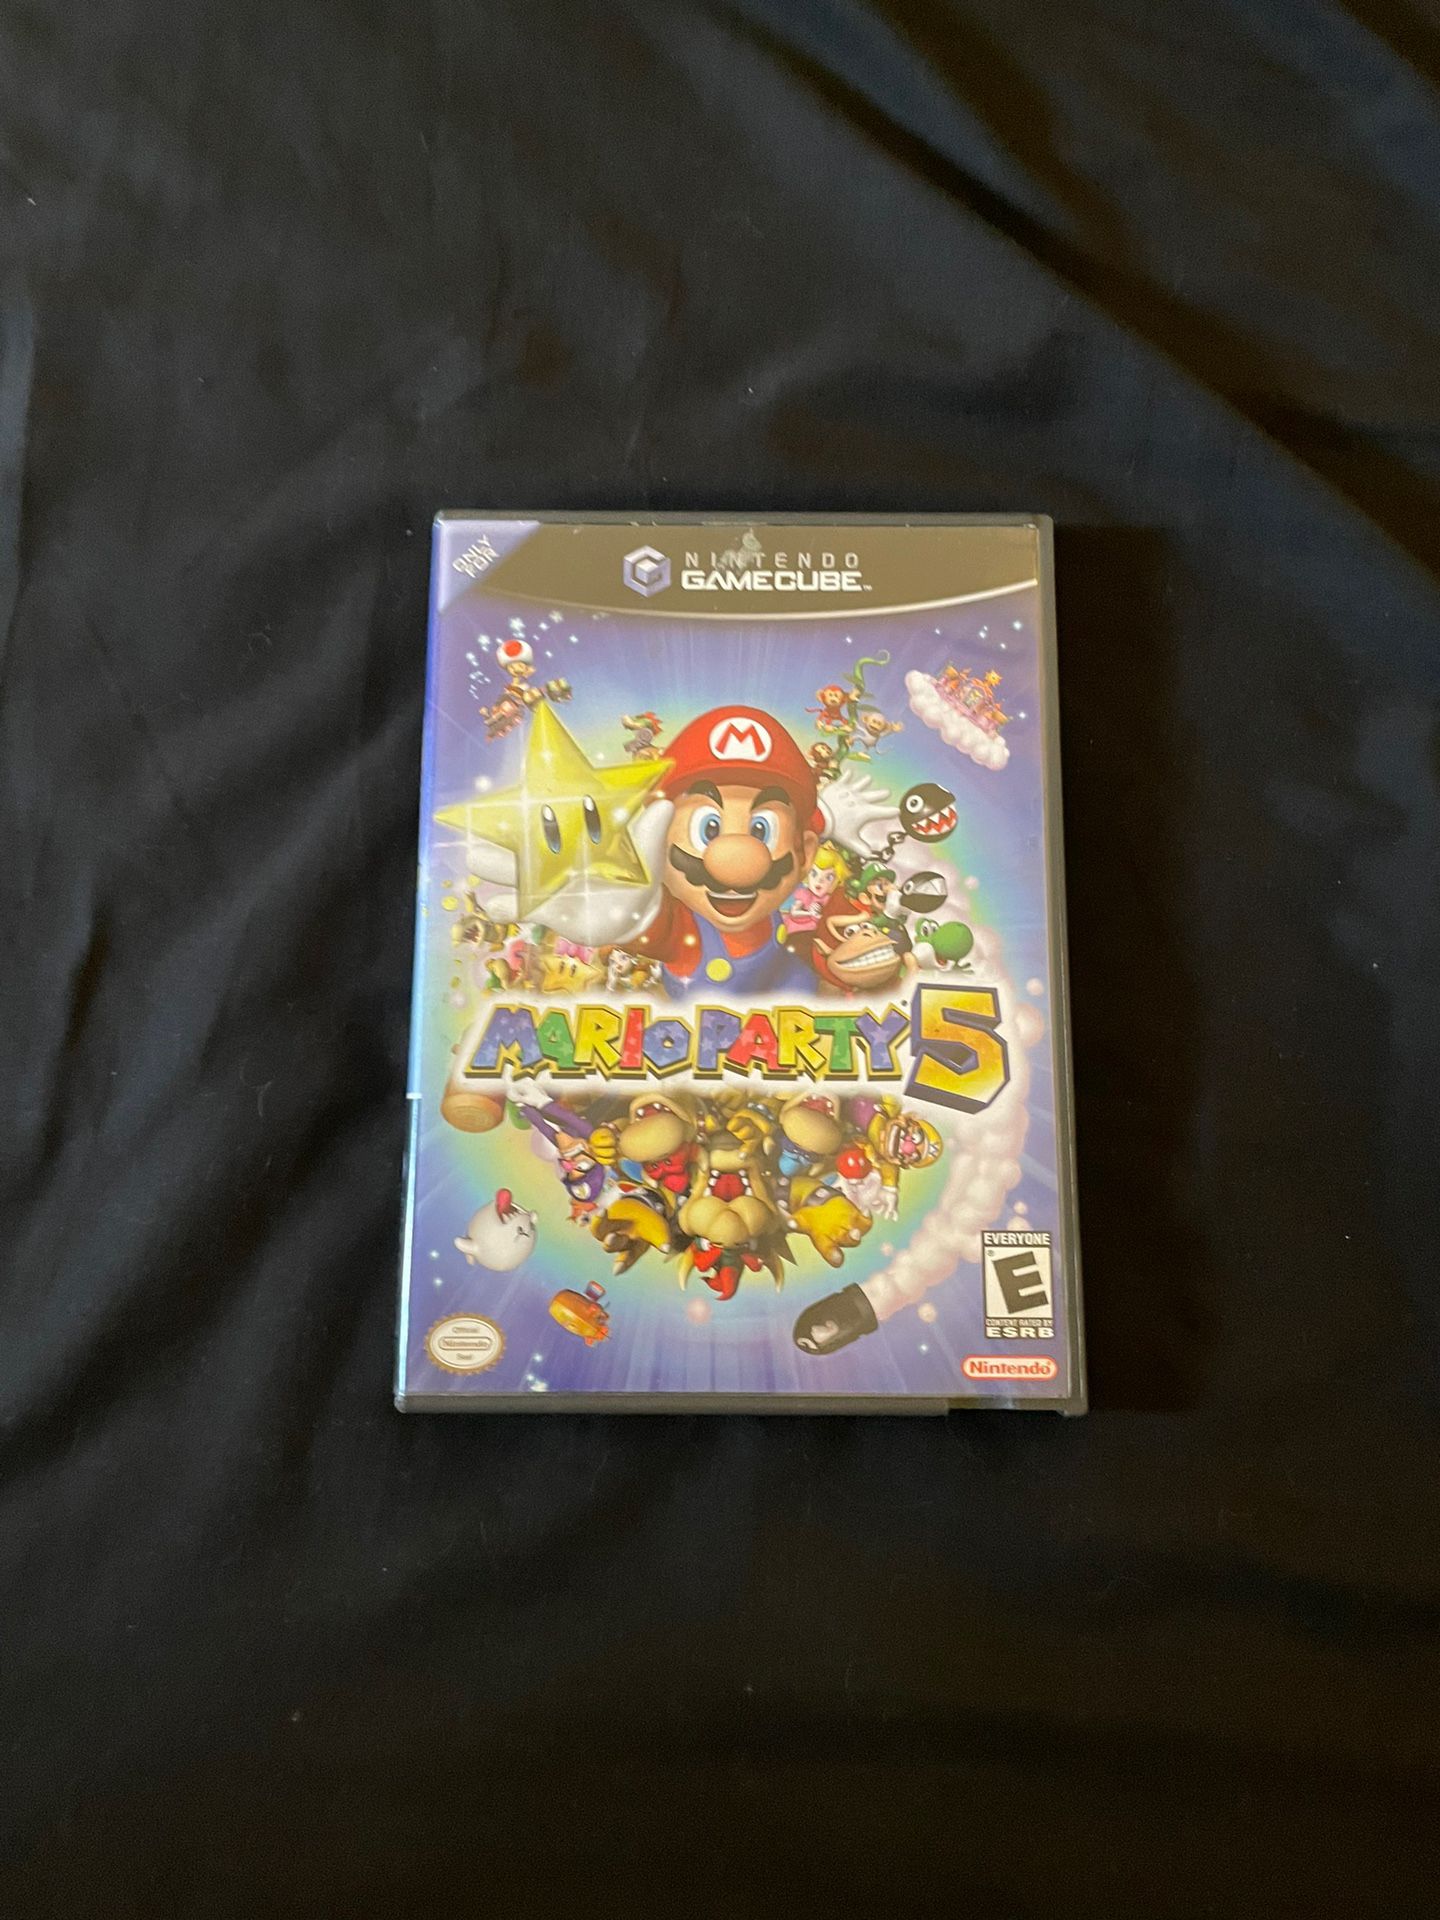 Mario Party 5 GameCube 